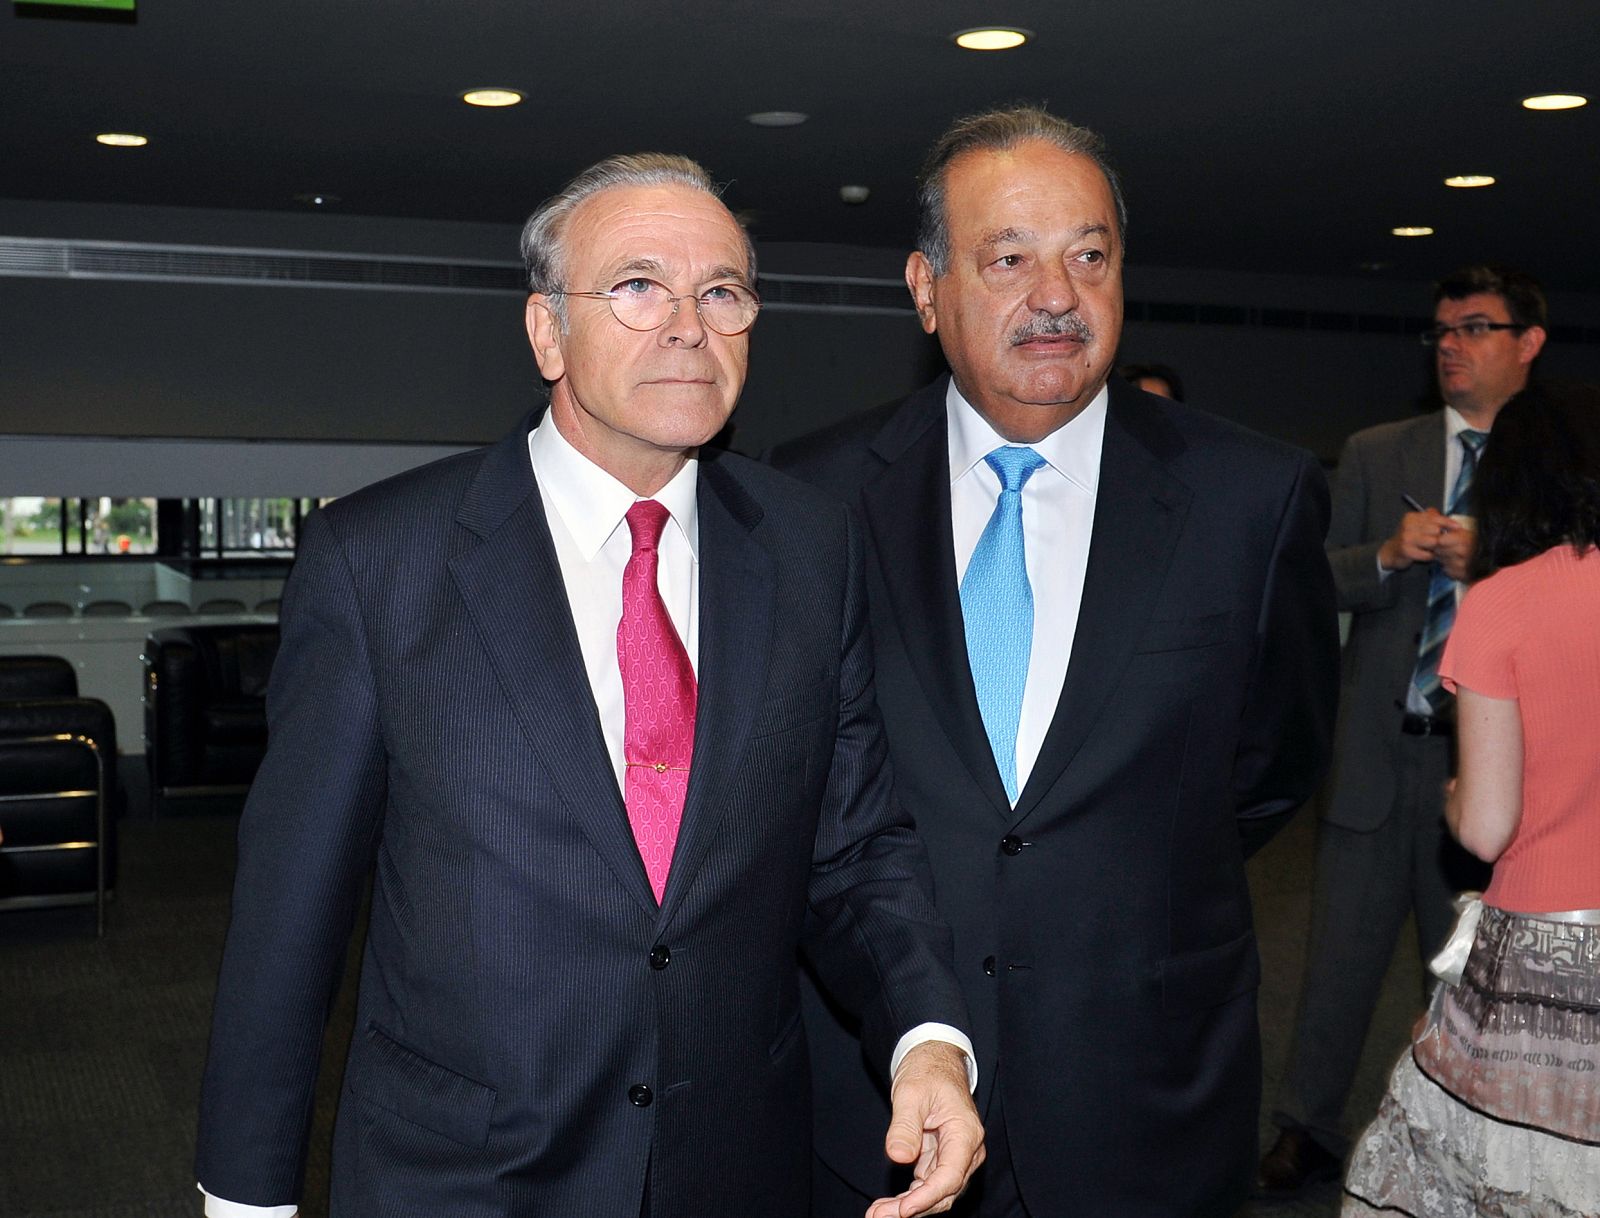 El presidente de La Caixa, Isidro Fainé, y el mepresario mexicano Carlos Slim, en el acto de creación de la Fundación Inbursa.